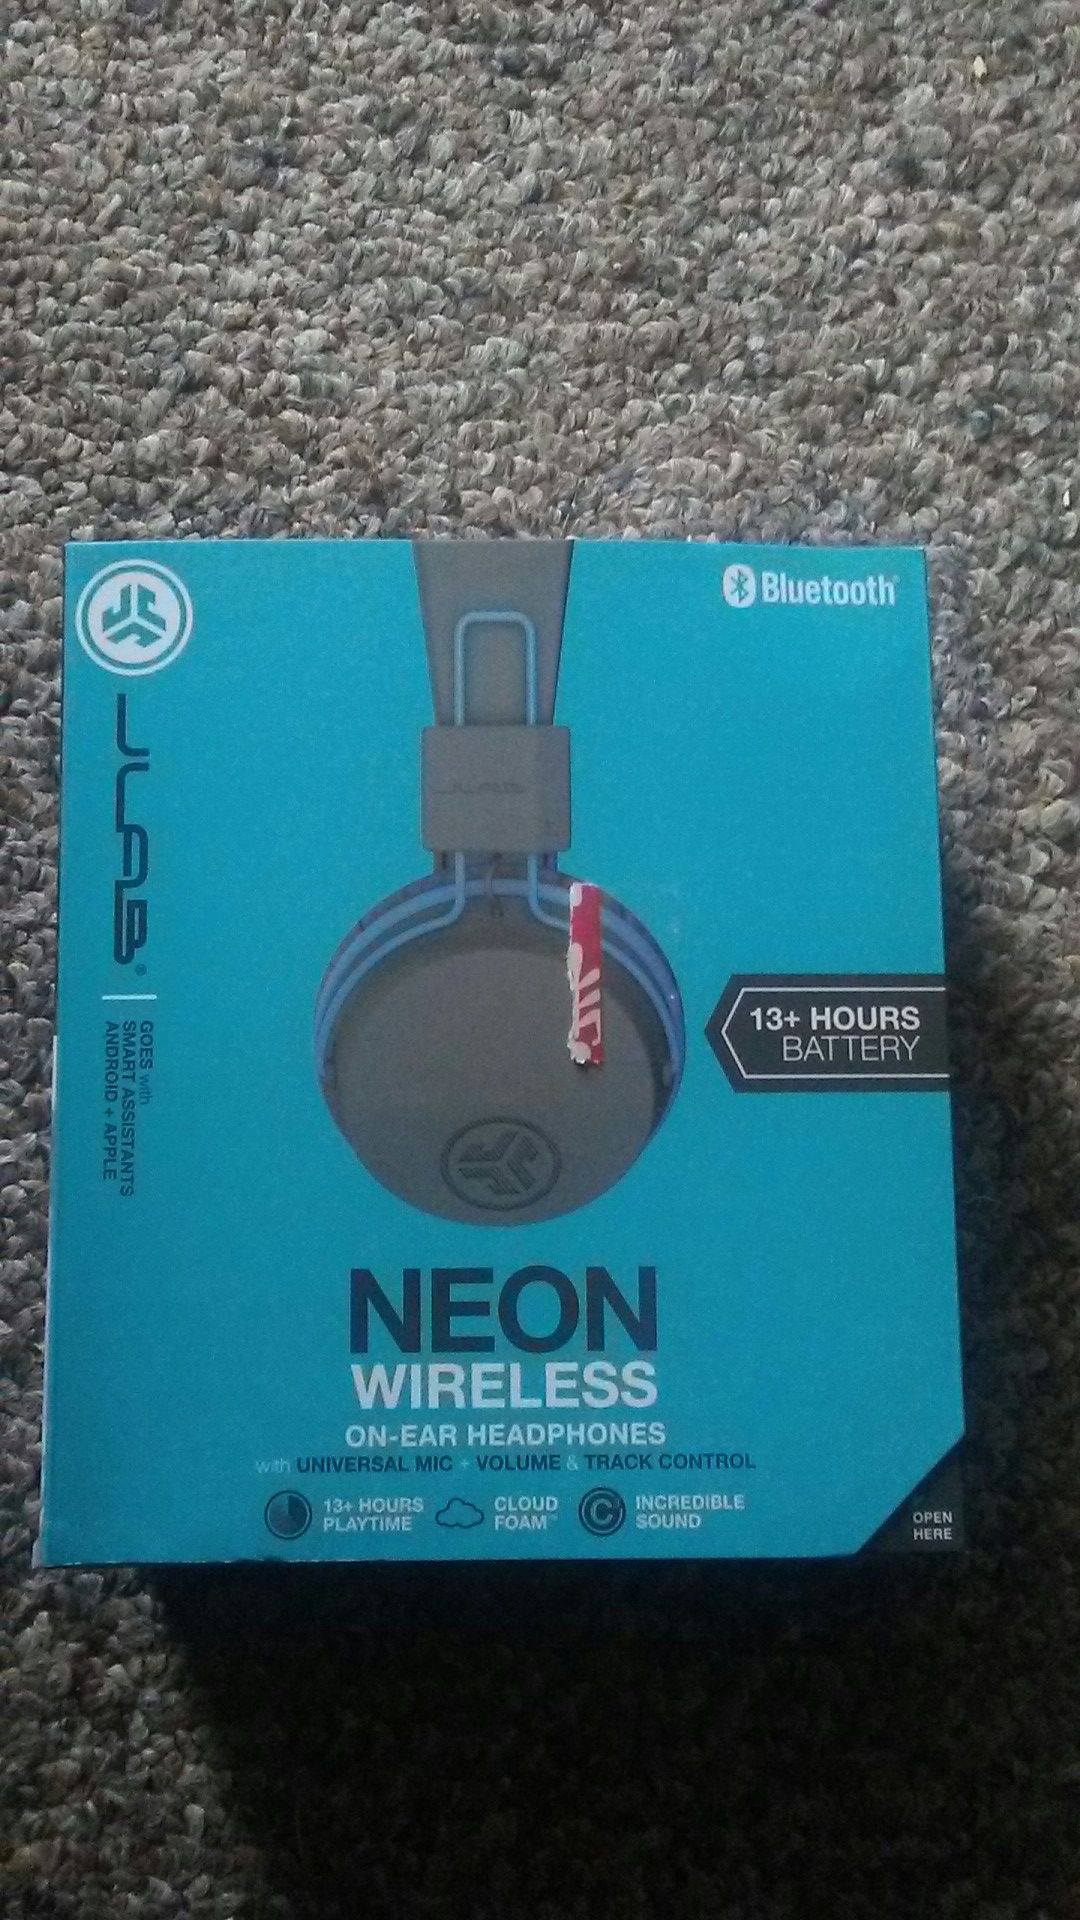 Neon wireless headphones